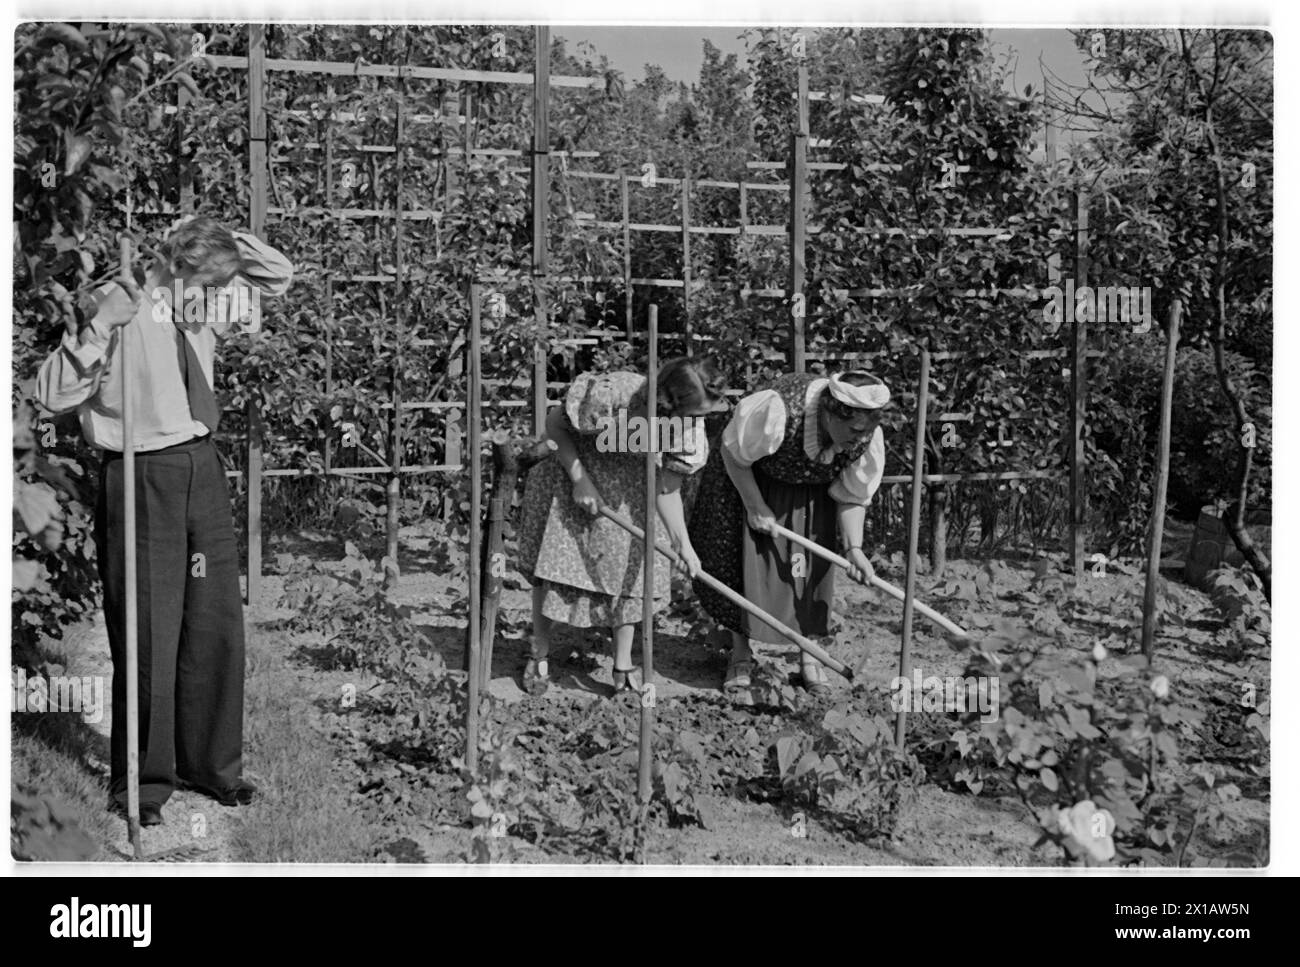 Annie Rosar im Schreberggarten, auf der Gartenarbeit. - 19400624 PD0013 - Rechteinfo: Rechte verwaltet (RM) Stockfoto